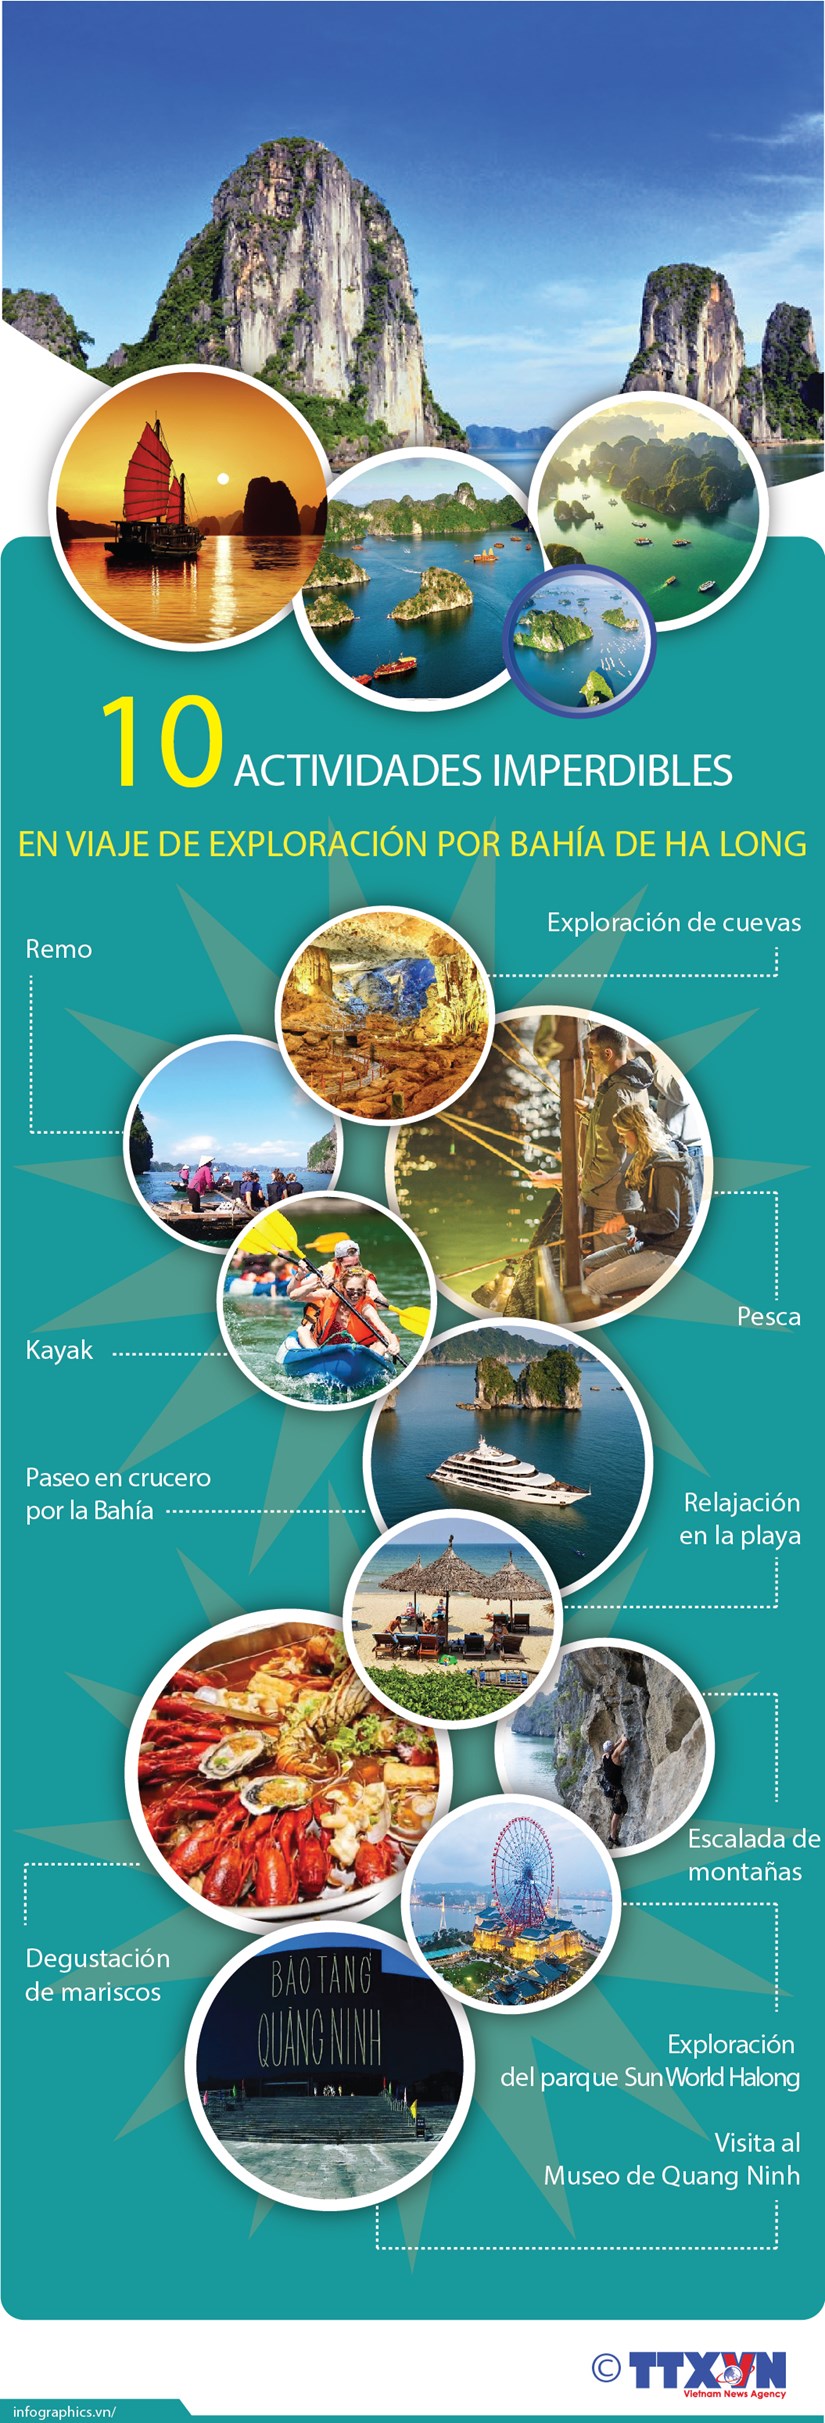 Diez actividades imperdibles en viaje de exploracion por Bahia de Ha Long hinh anh 1